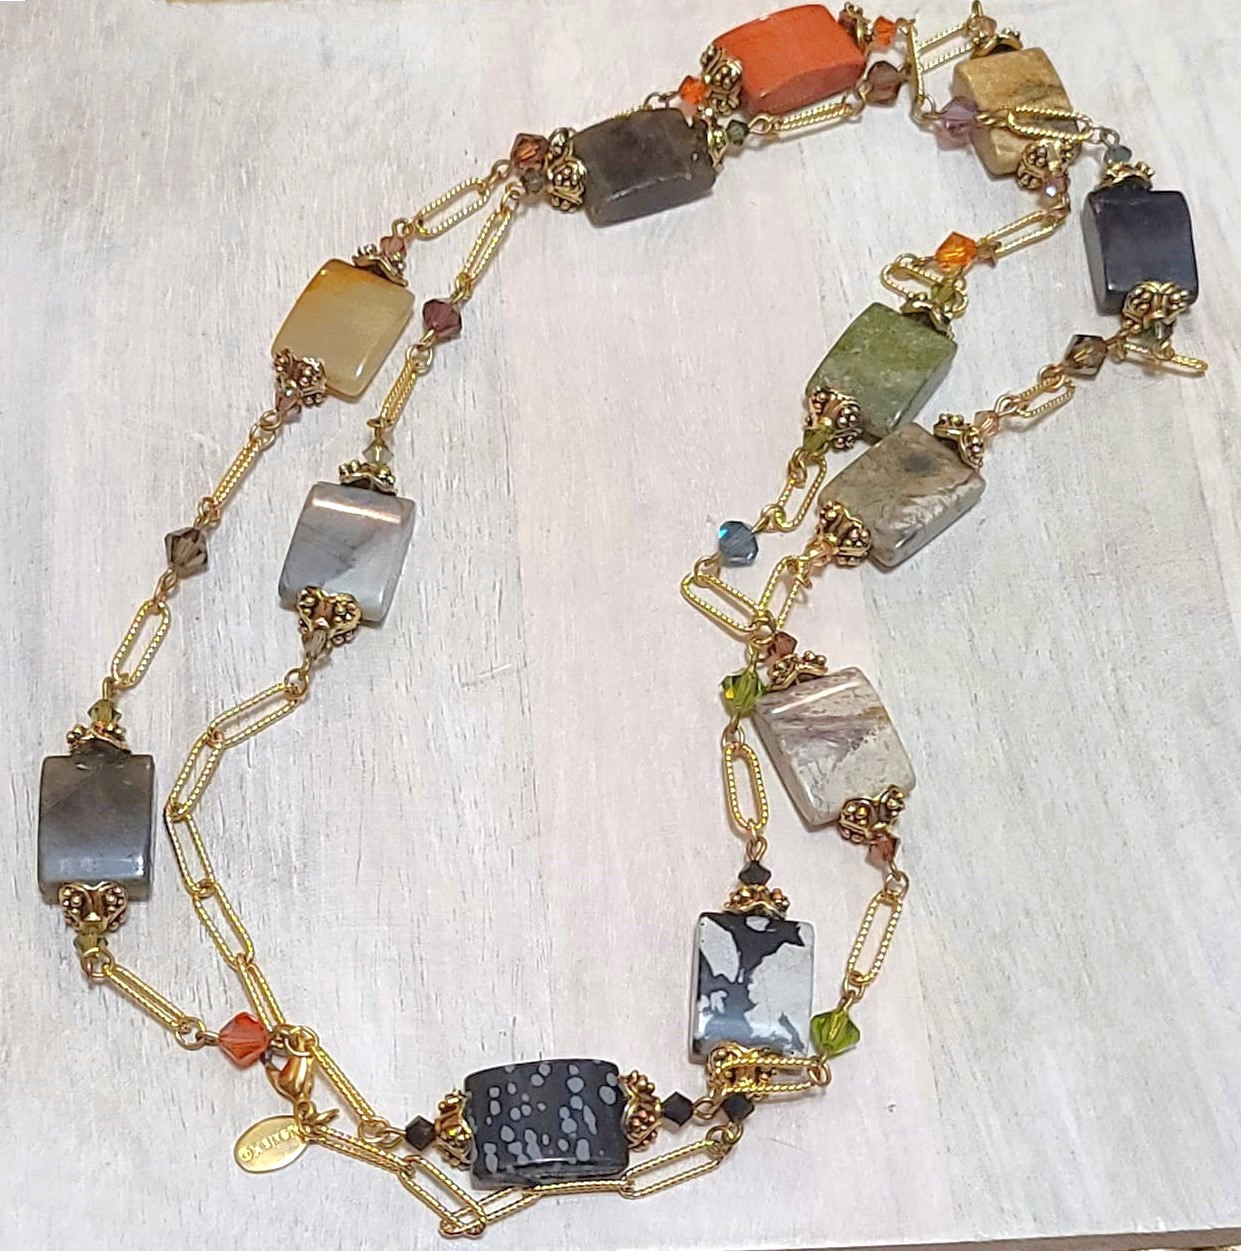 Gemstones and swarovski crystals link necklace, vintage, signed Alex.K.